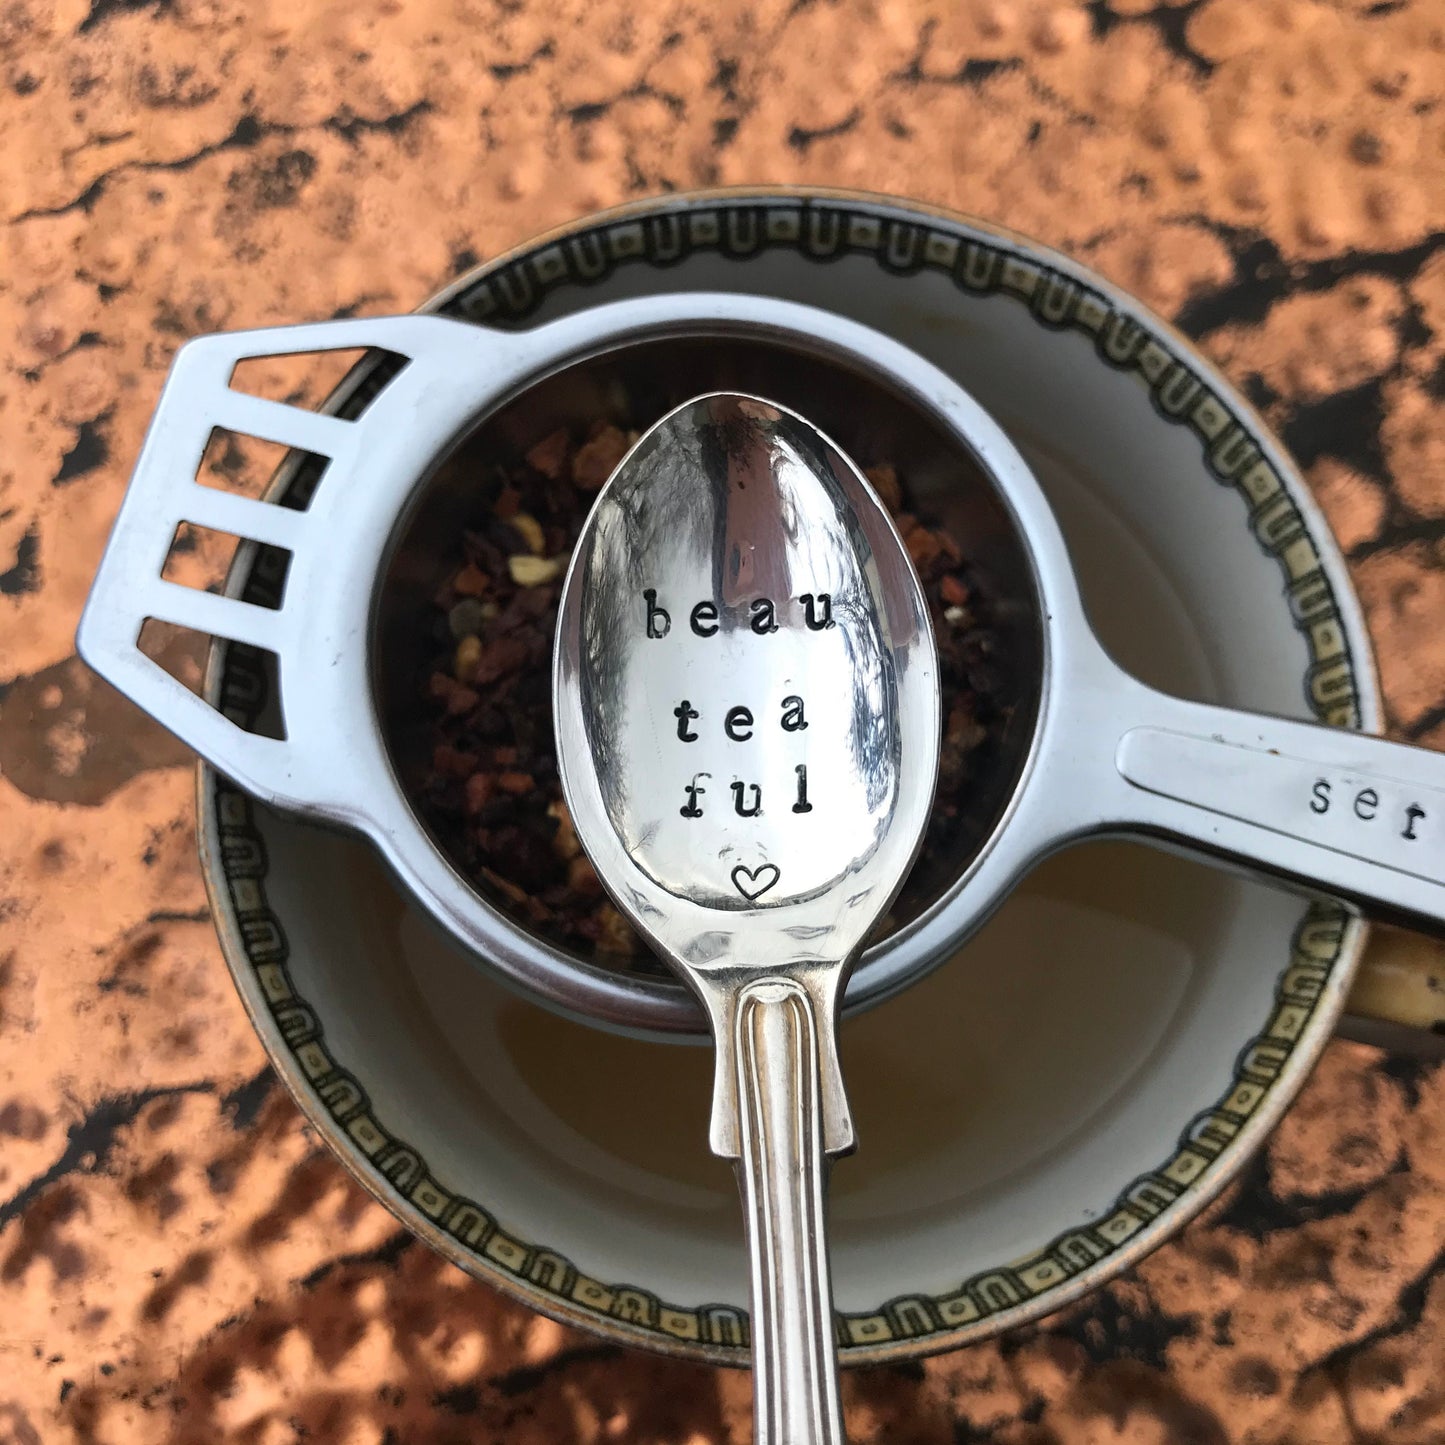 Beau tea ful - Vintage Coffee Spoon